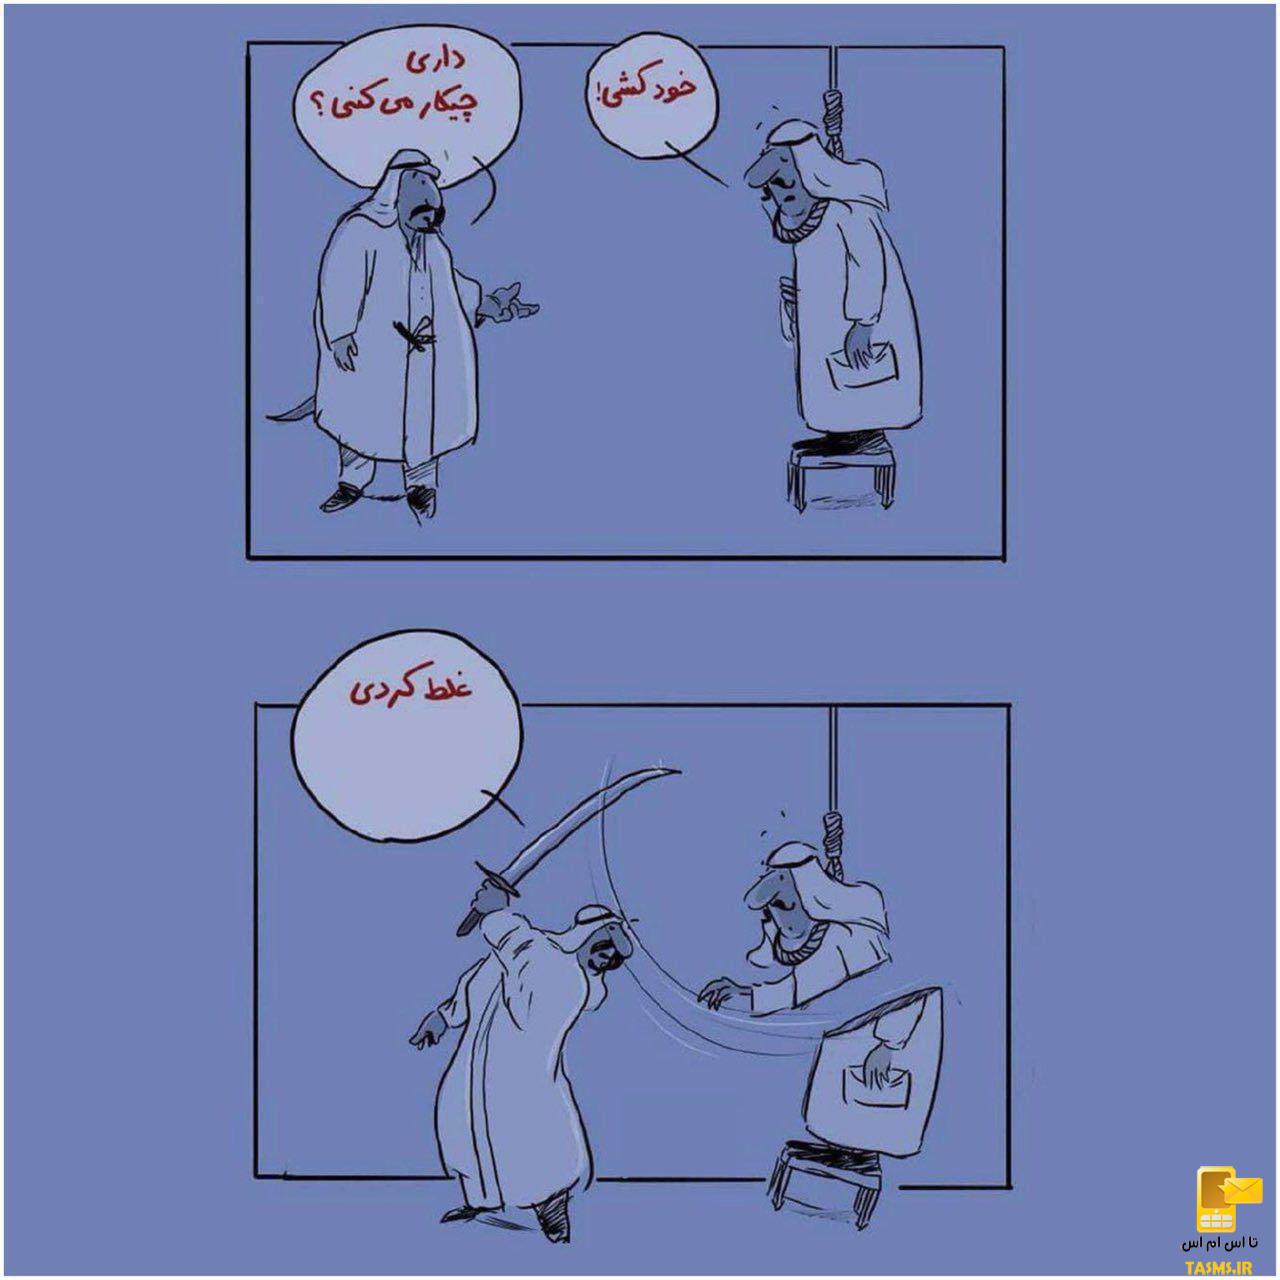 قانون عجیب عربستان، مجازات خودکشی مرگ است!